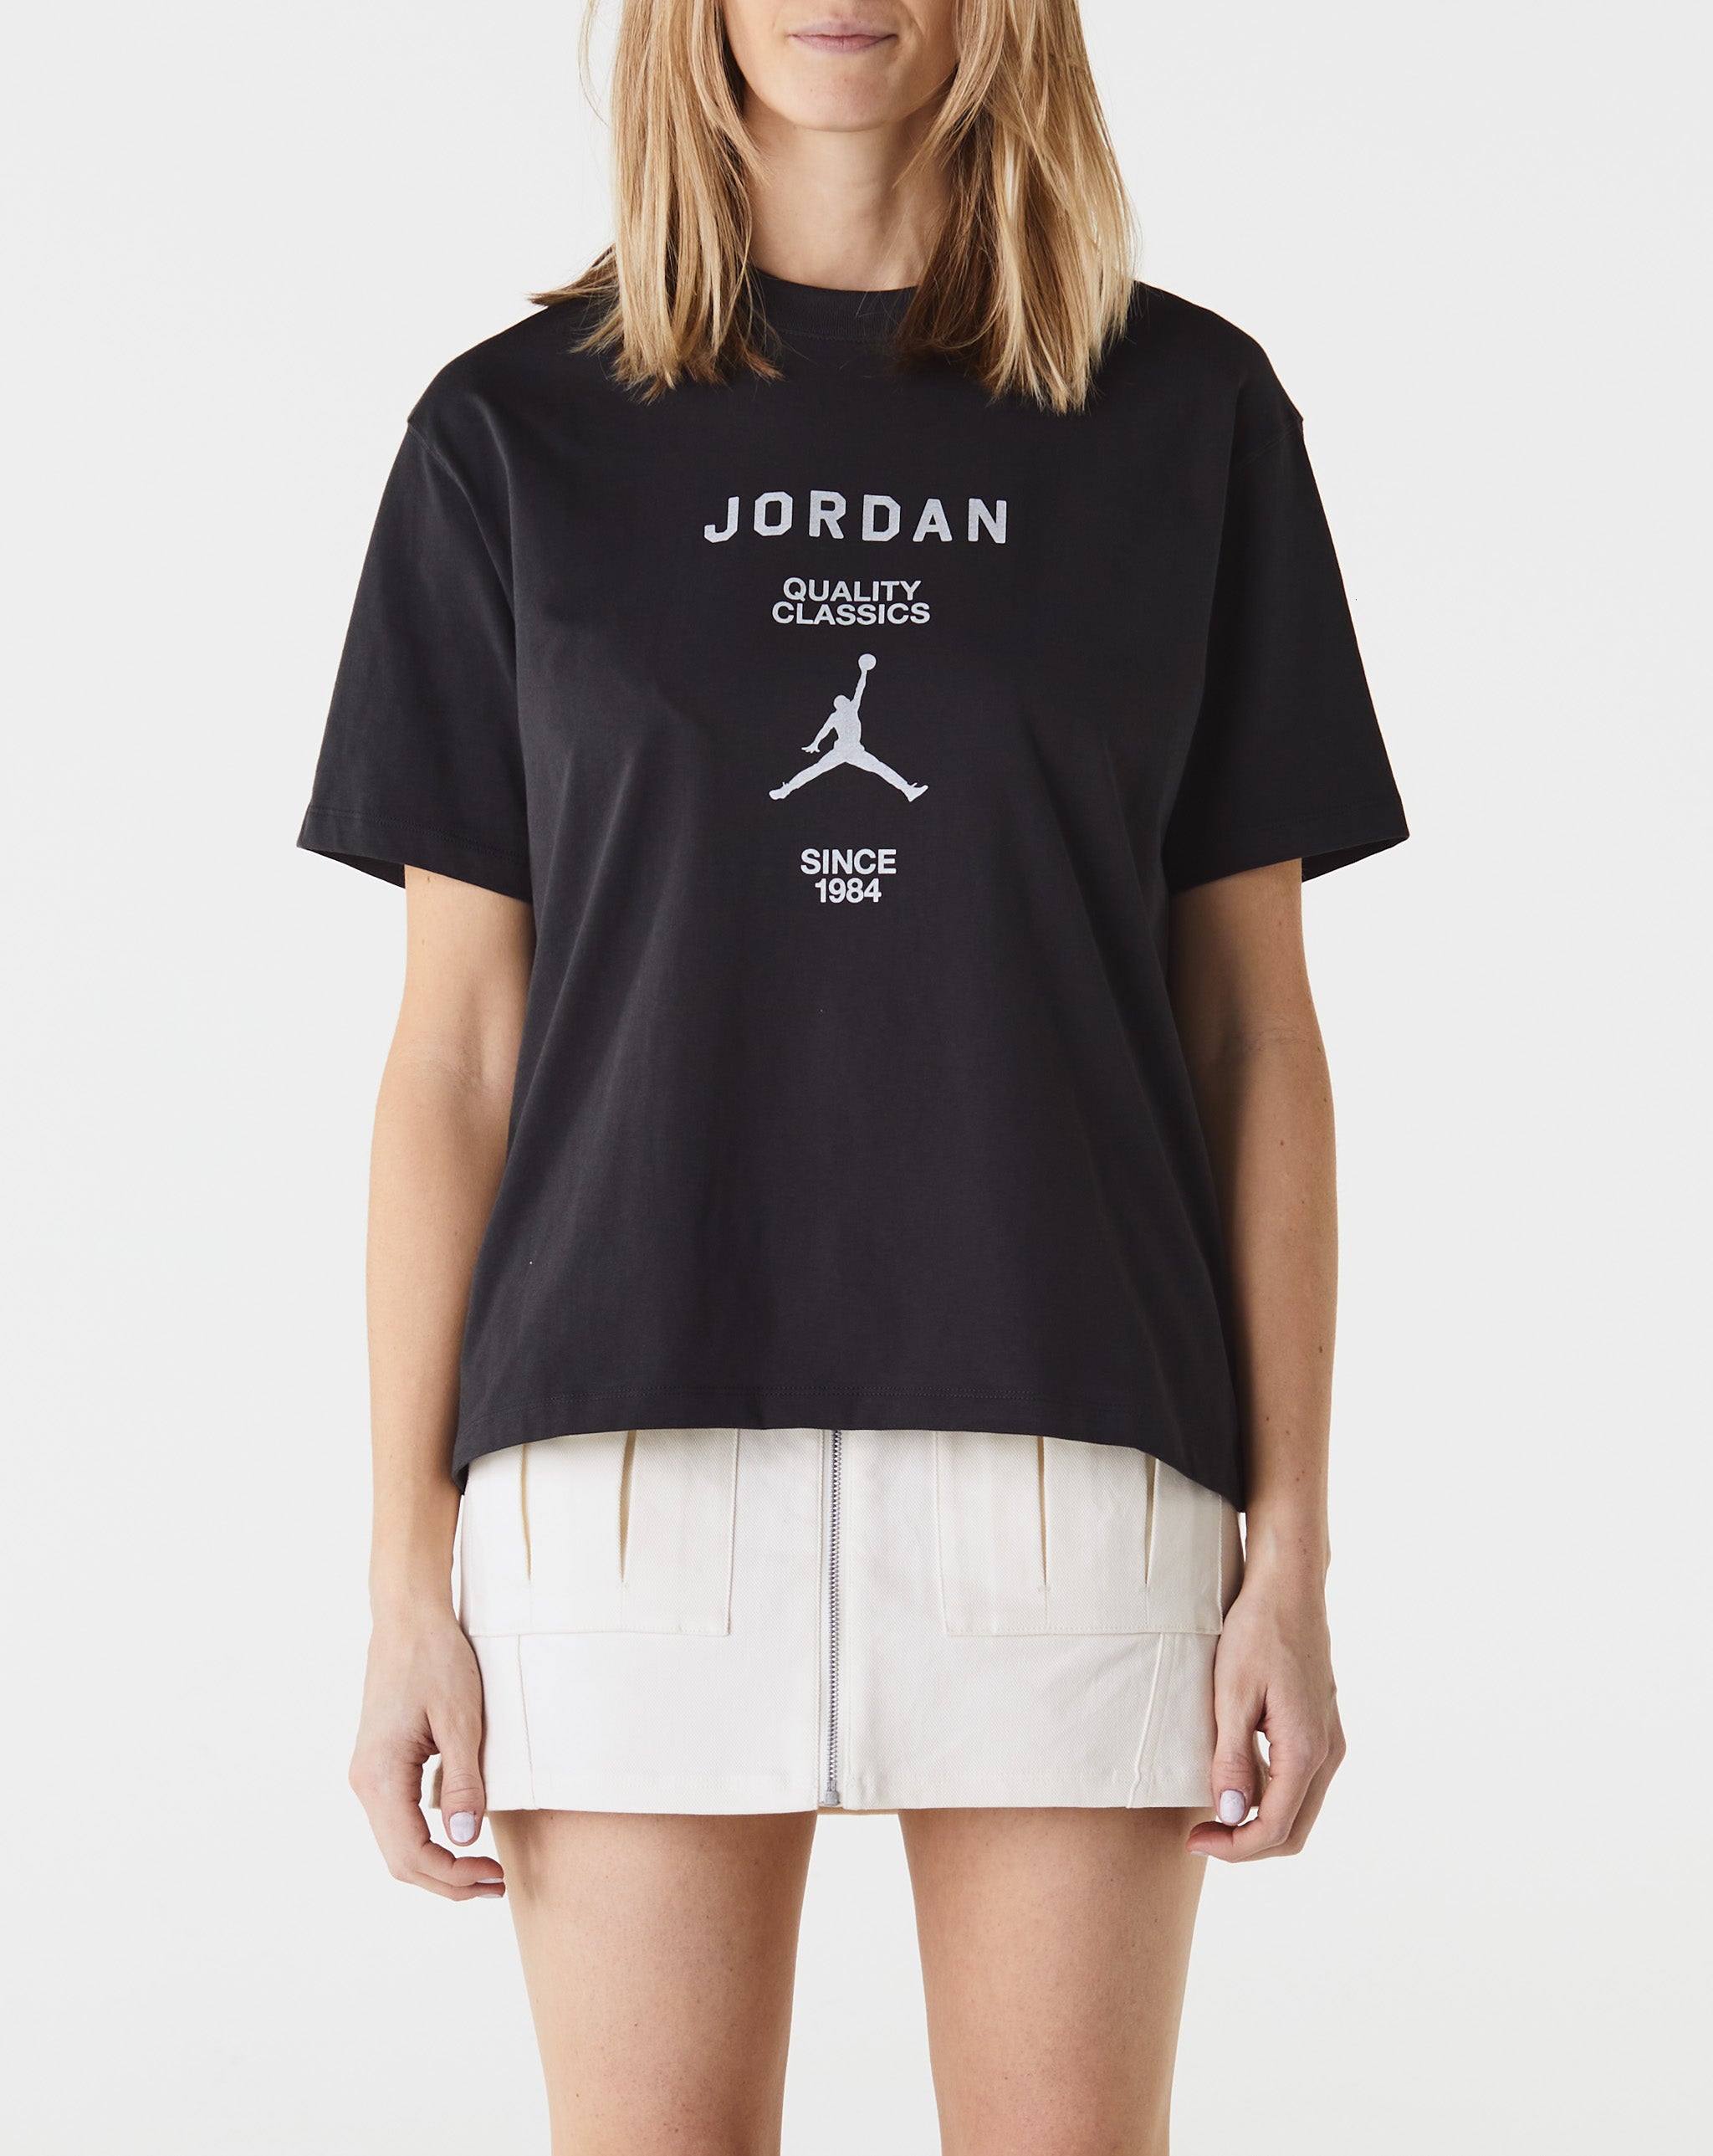 Air Jordan Women's Jordan Quality Classics T-Shirt  - Cheap Erlebniswelt-fliegenfischen Jordan outlet